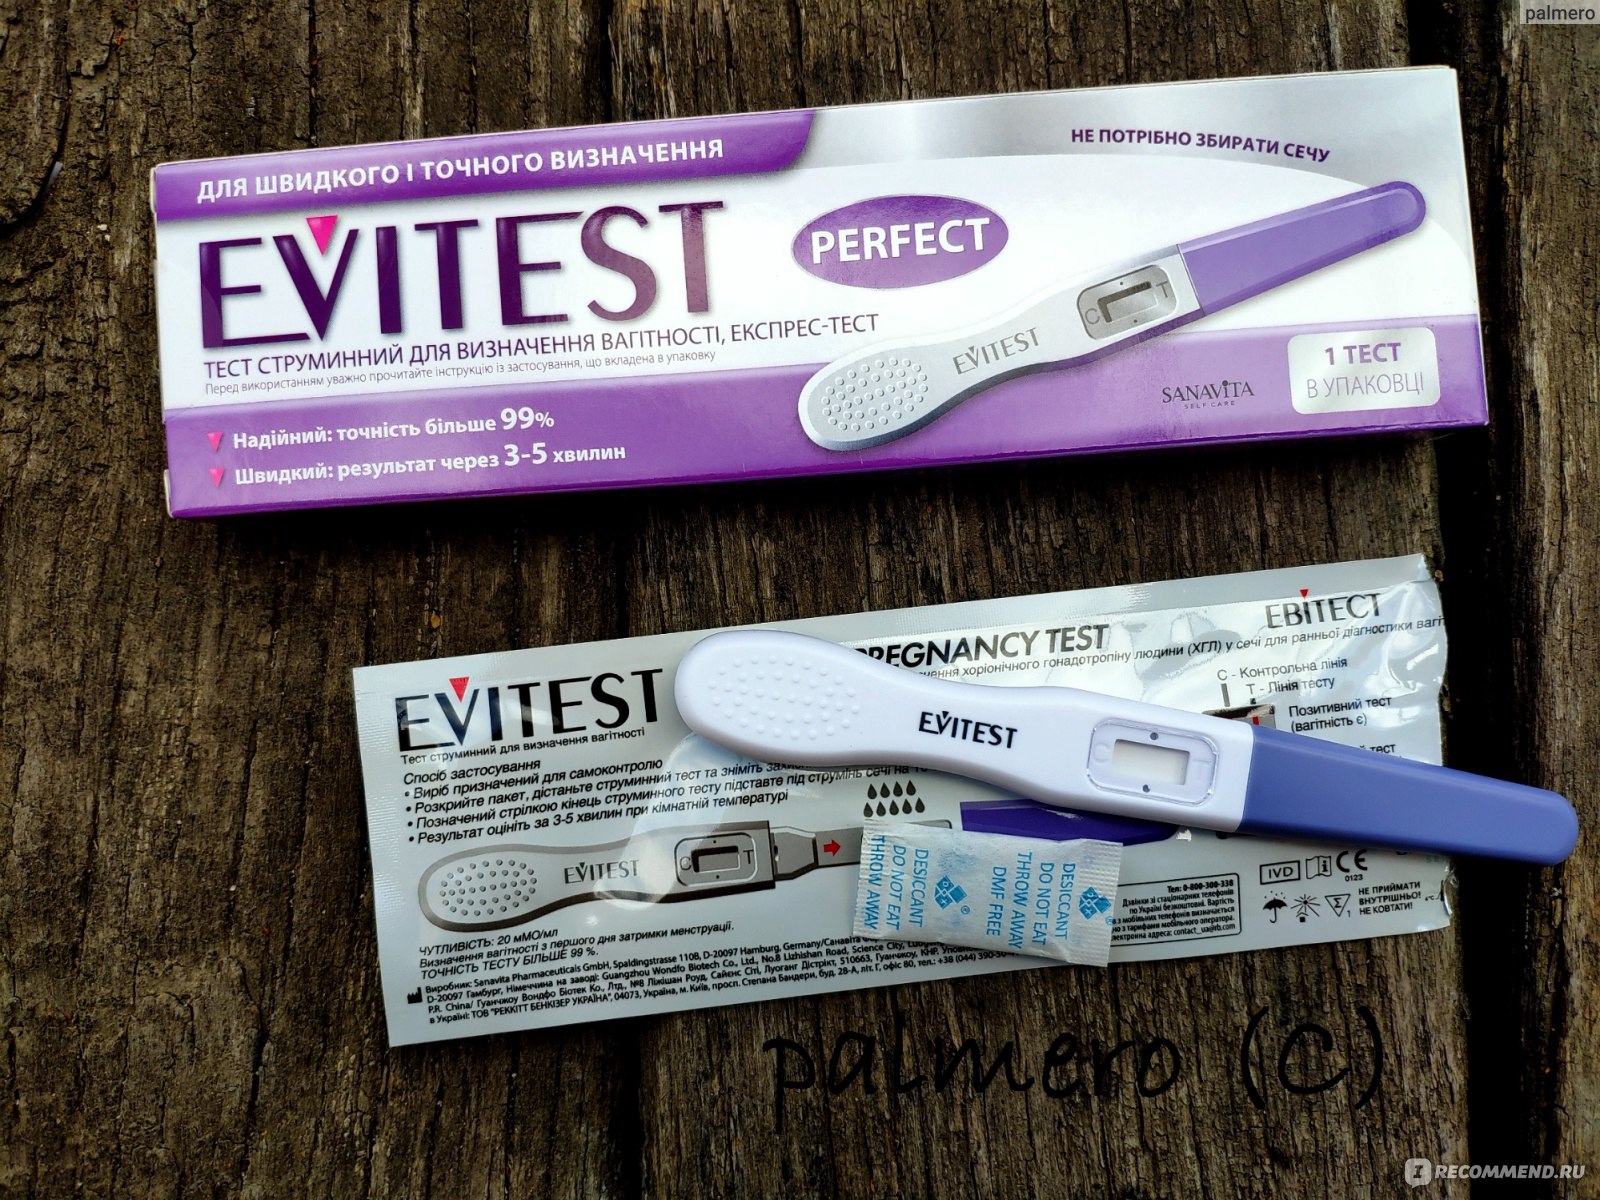 Тест на беременность 5 отзывы. Струйный тест на беременность Evitest струйный. Тест на беременность Evitest perfect струйный. Электронный тест струйный эвитест. Струйный тест (тест-мидстрим).